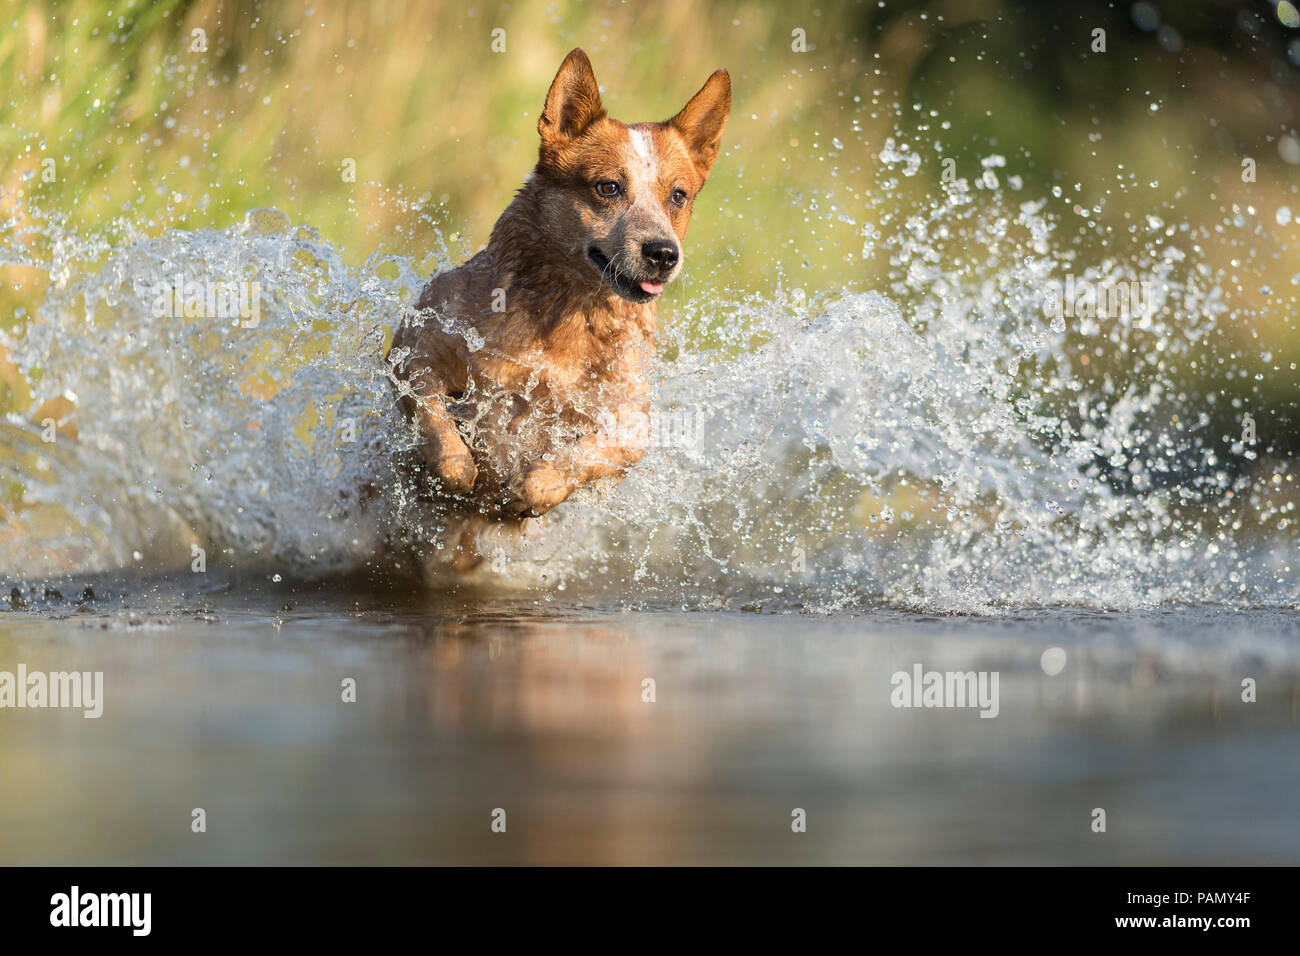 Australian Cattle Dog running through splashing water. Germany.. Stock Photo